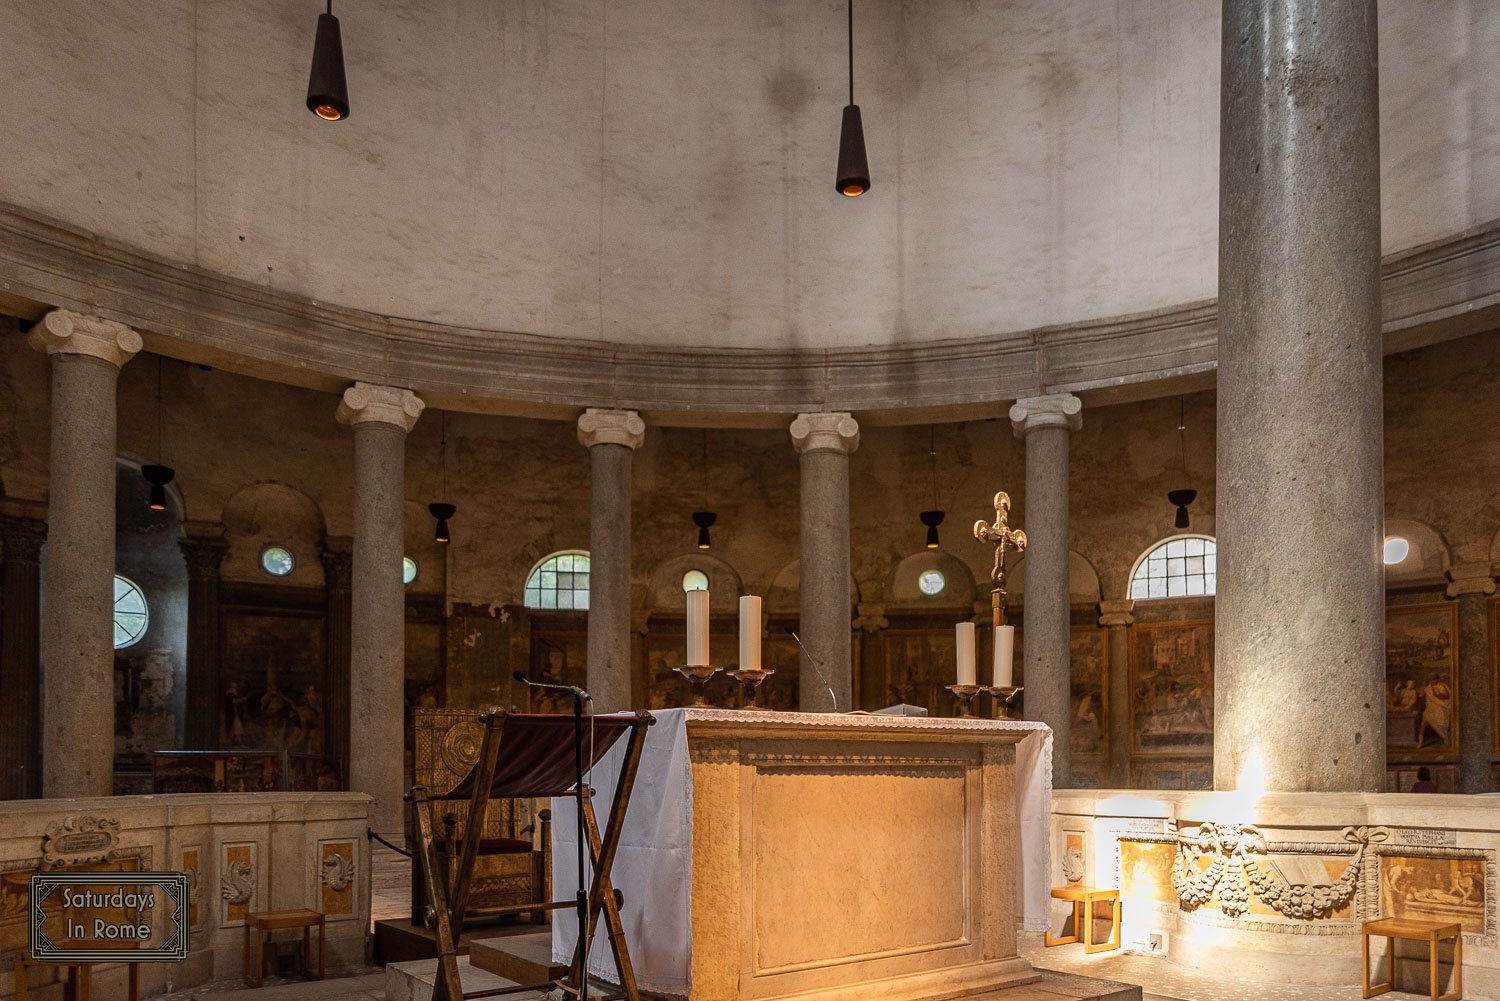 Santo Stefano Rotondo - Center Altar